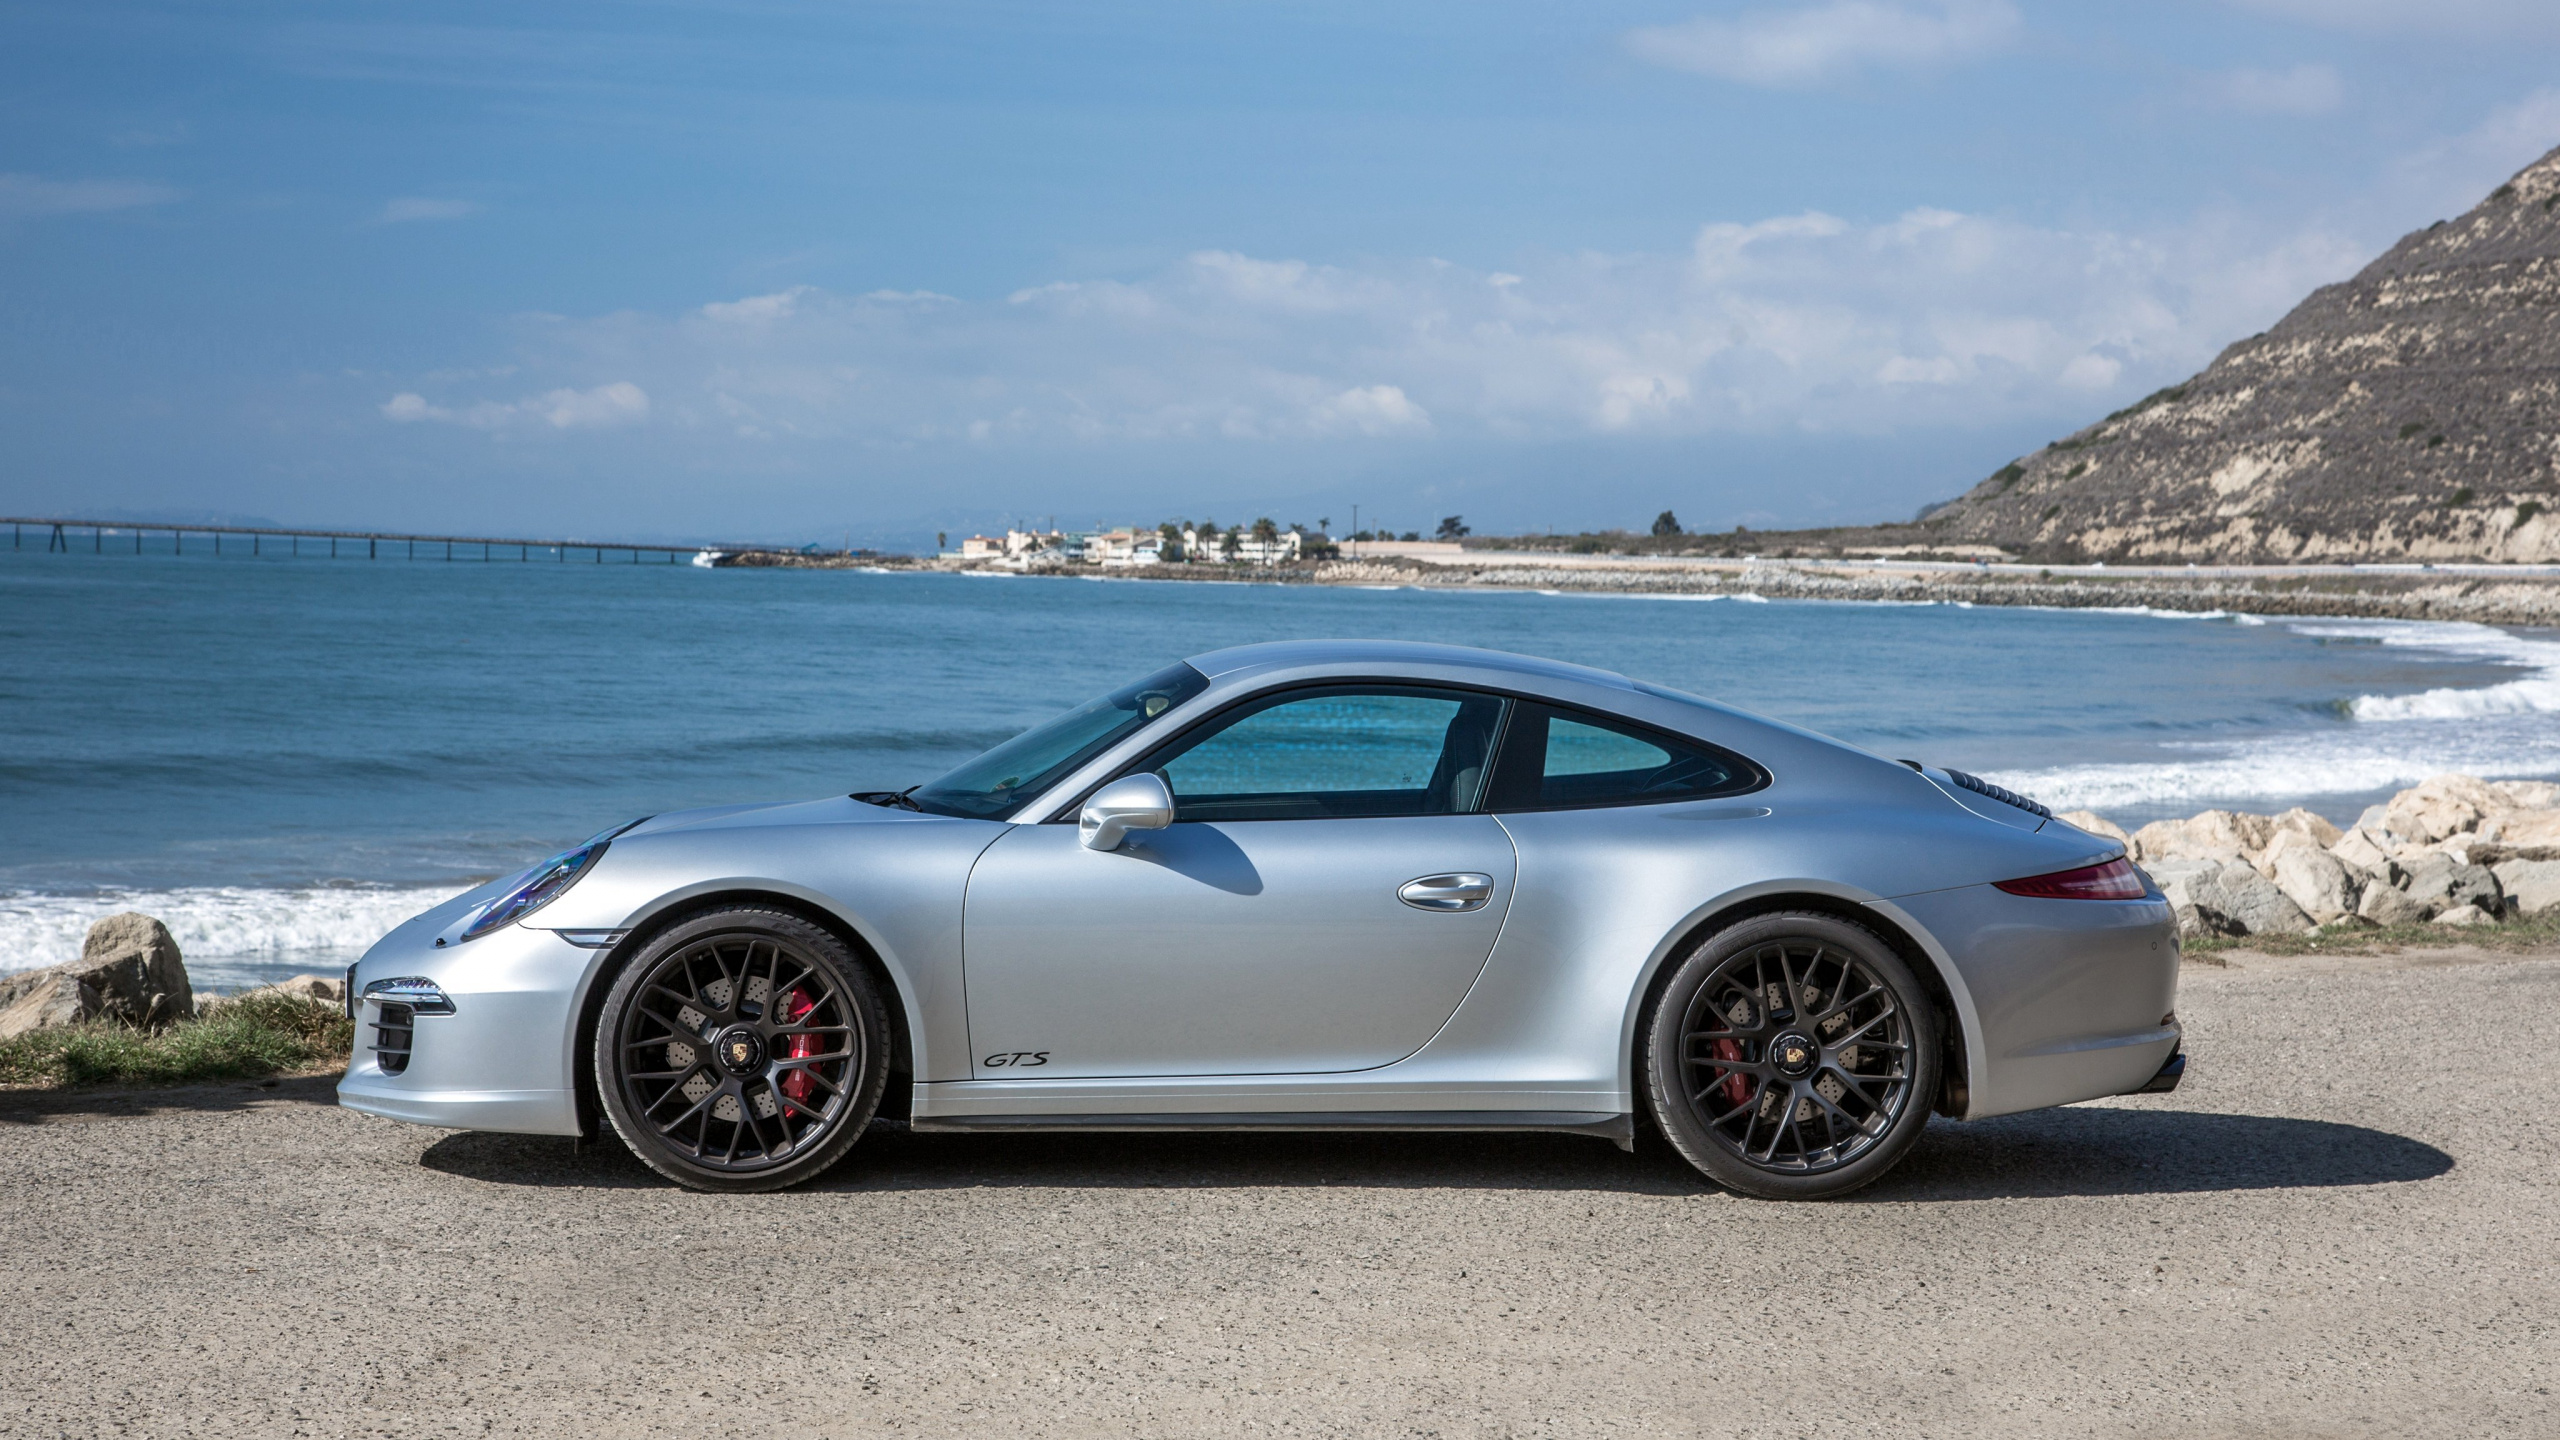 Silver Porsche 911 Estacionado en la Orilla Del Mar Durante el Día. Wallpaper in 2560x1440 Resolution